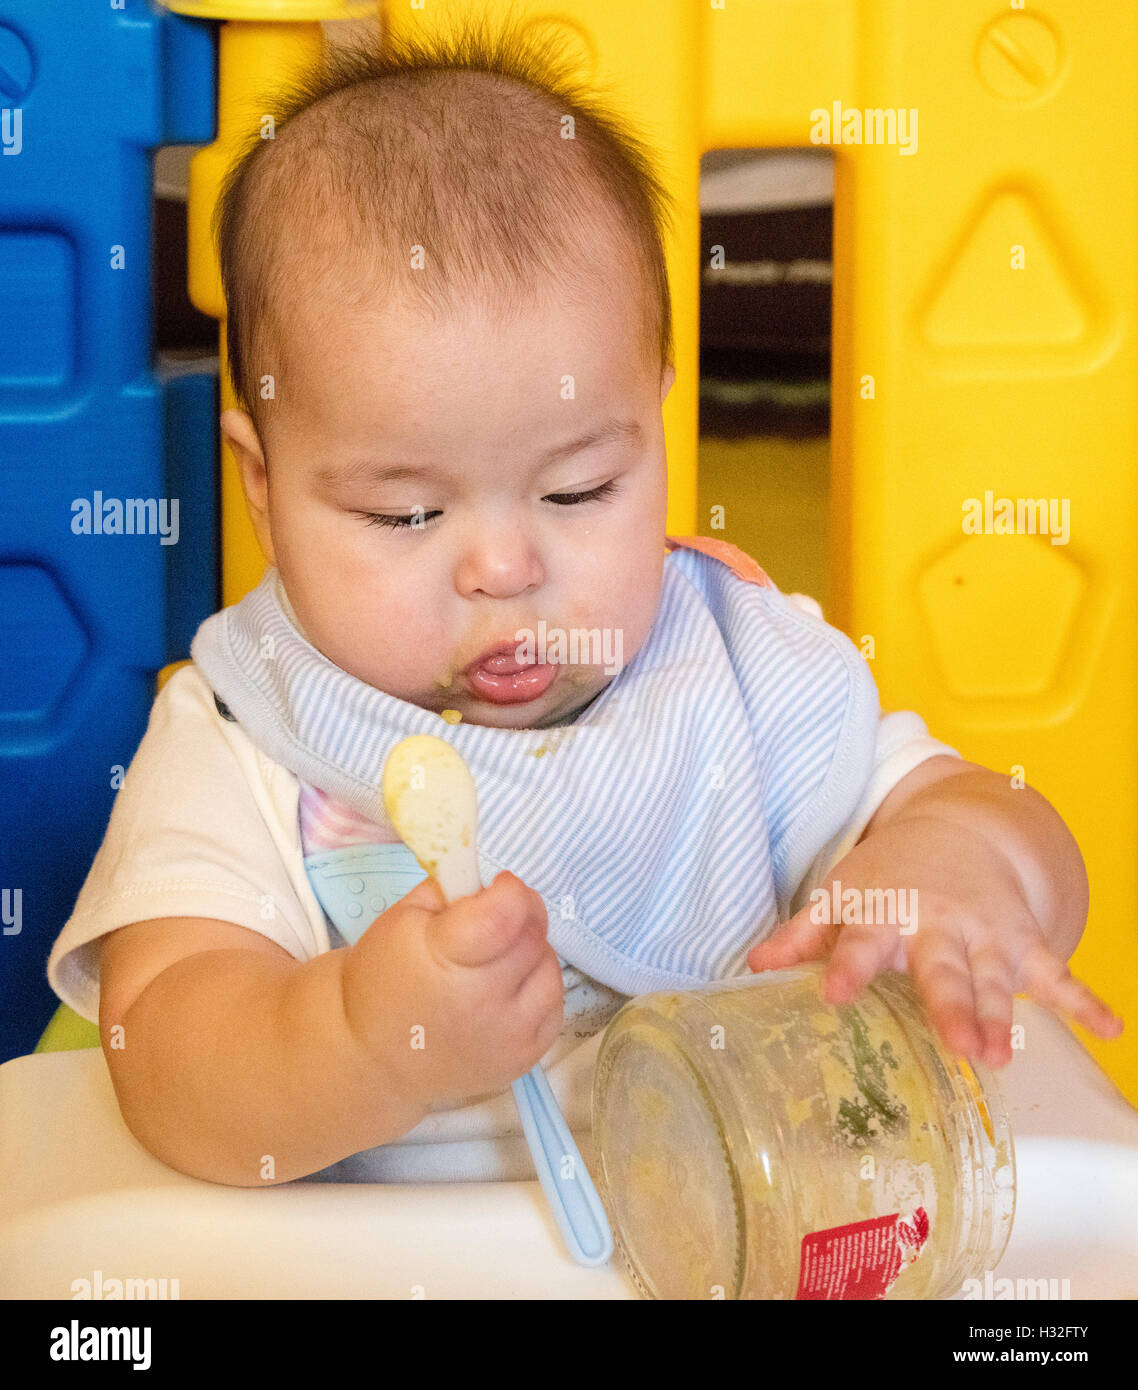 Primer plano de un bebé jugando con una cuchara y jar Foto de stock